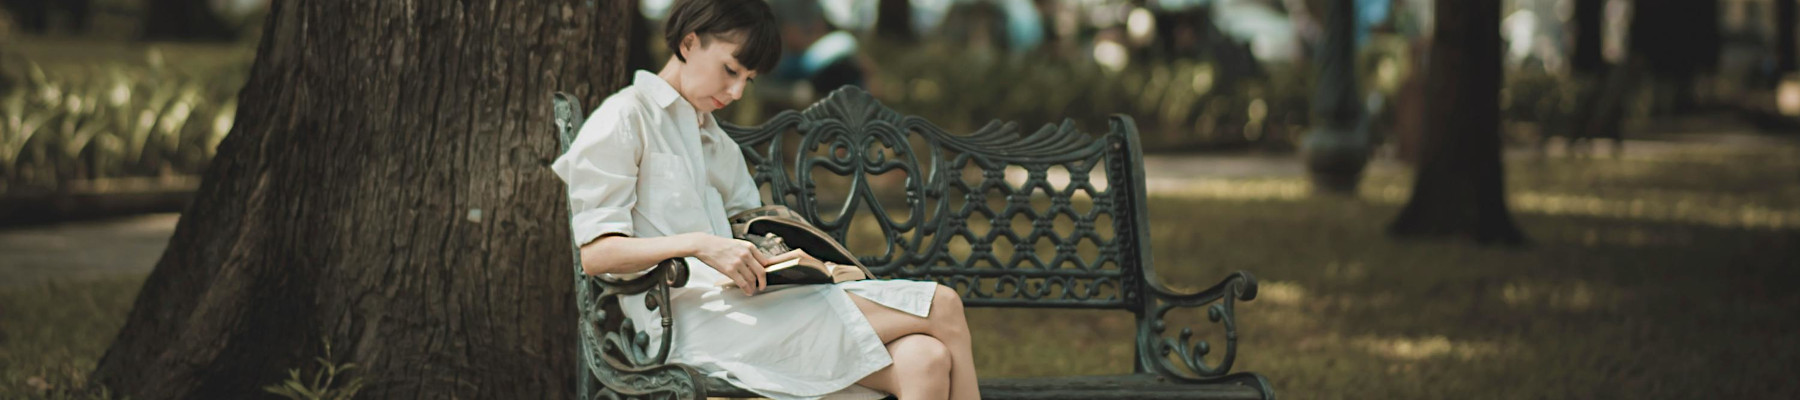 Frau sitzt auf Bank im Park. Sie liest ein Buch.